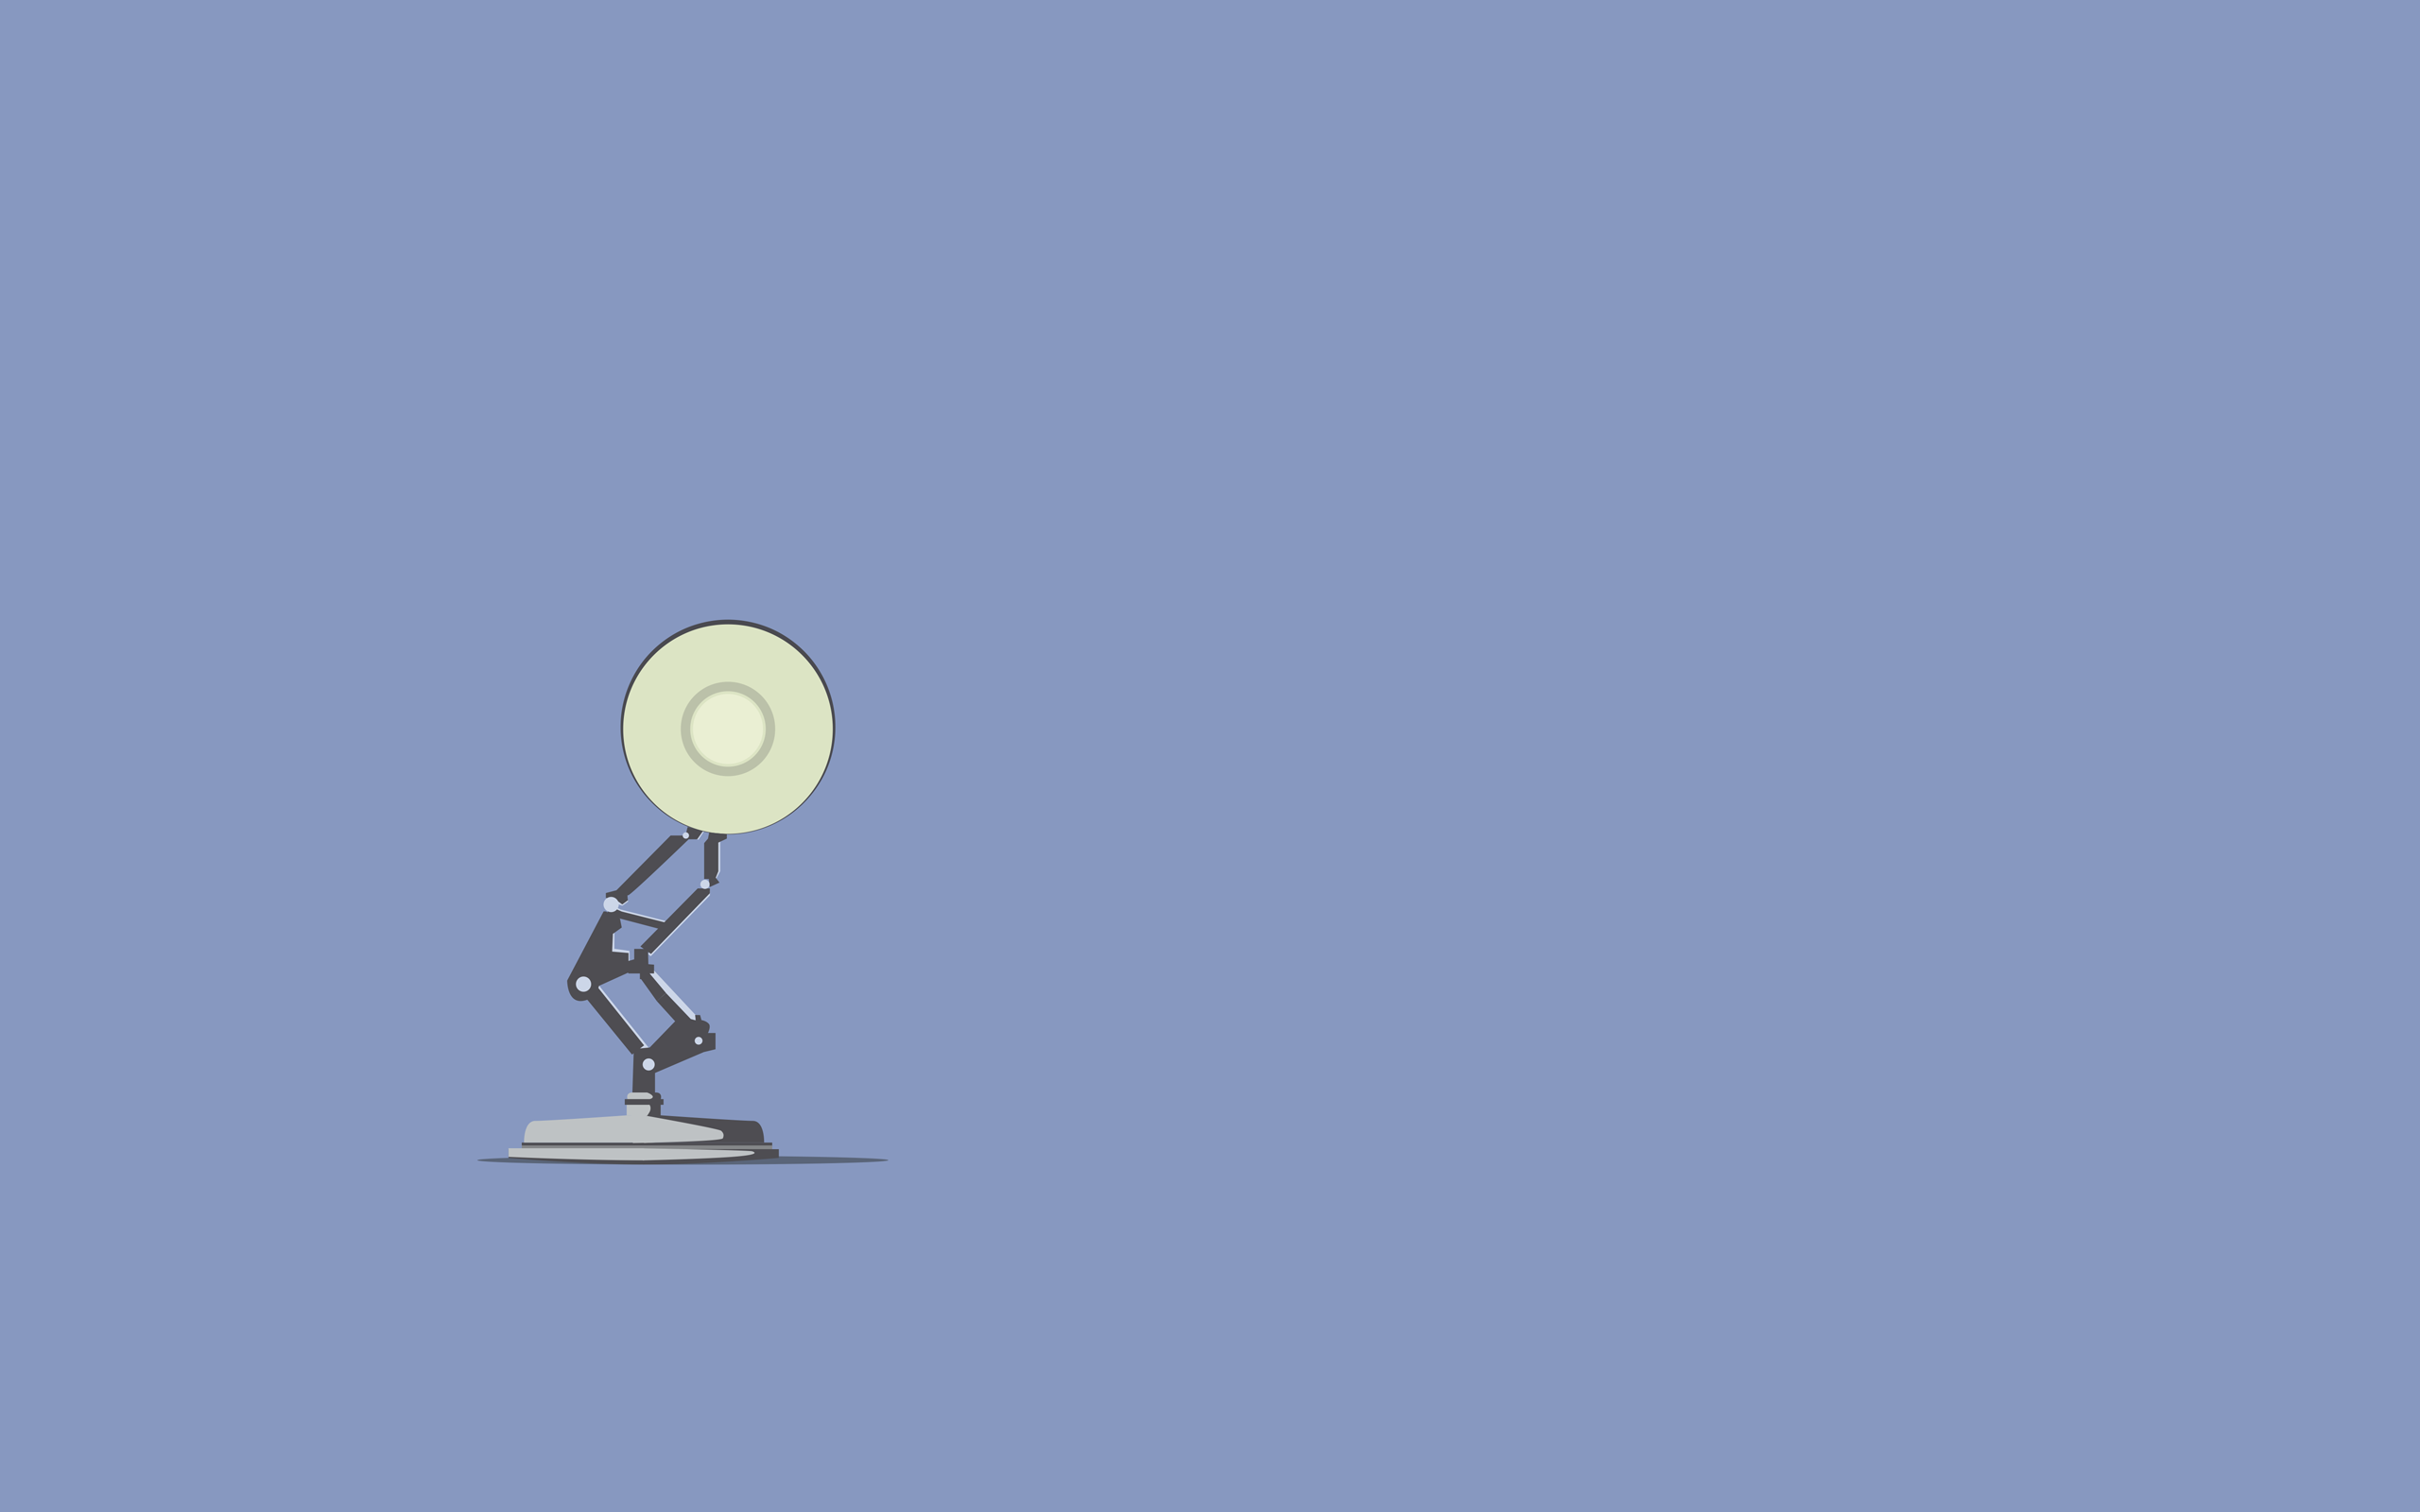 Pixar, lamps - desktop wallpaper